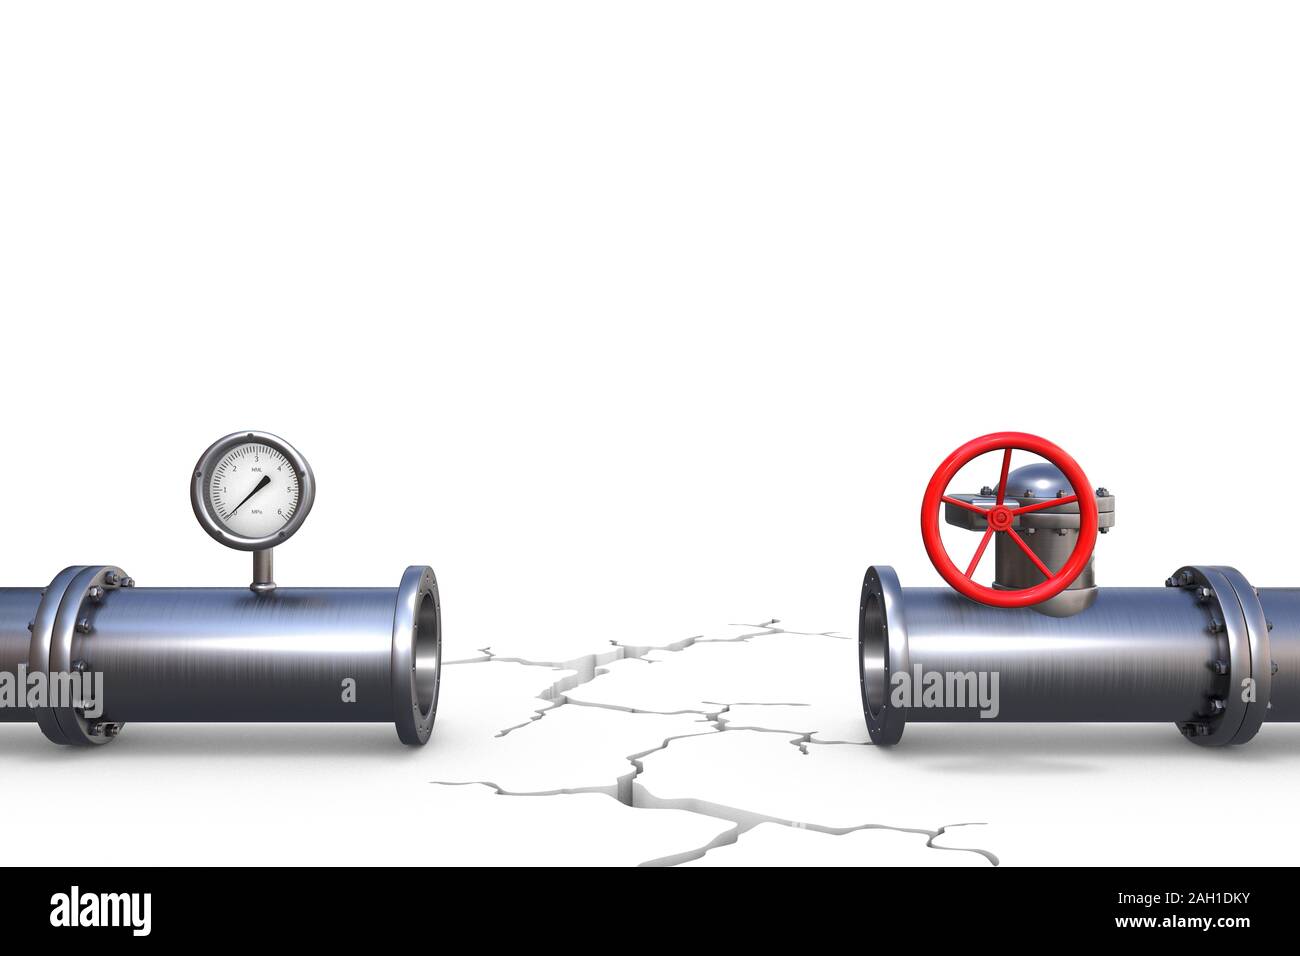 3D-Illustration: Zwei unverbundene Pipeline Fragmente mit einem tiefen Riss zwischen ihnen. Stahl Gasleitung mit rot Ventil und Manometer. Stockfoto